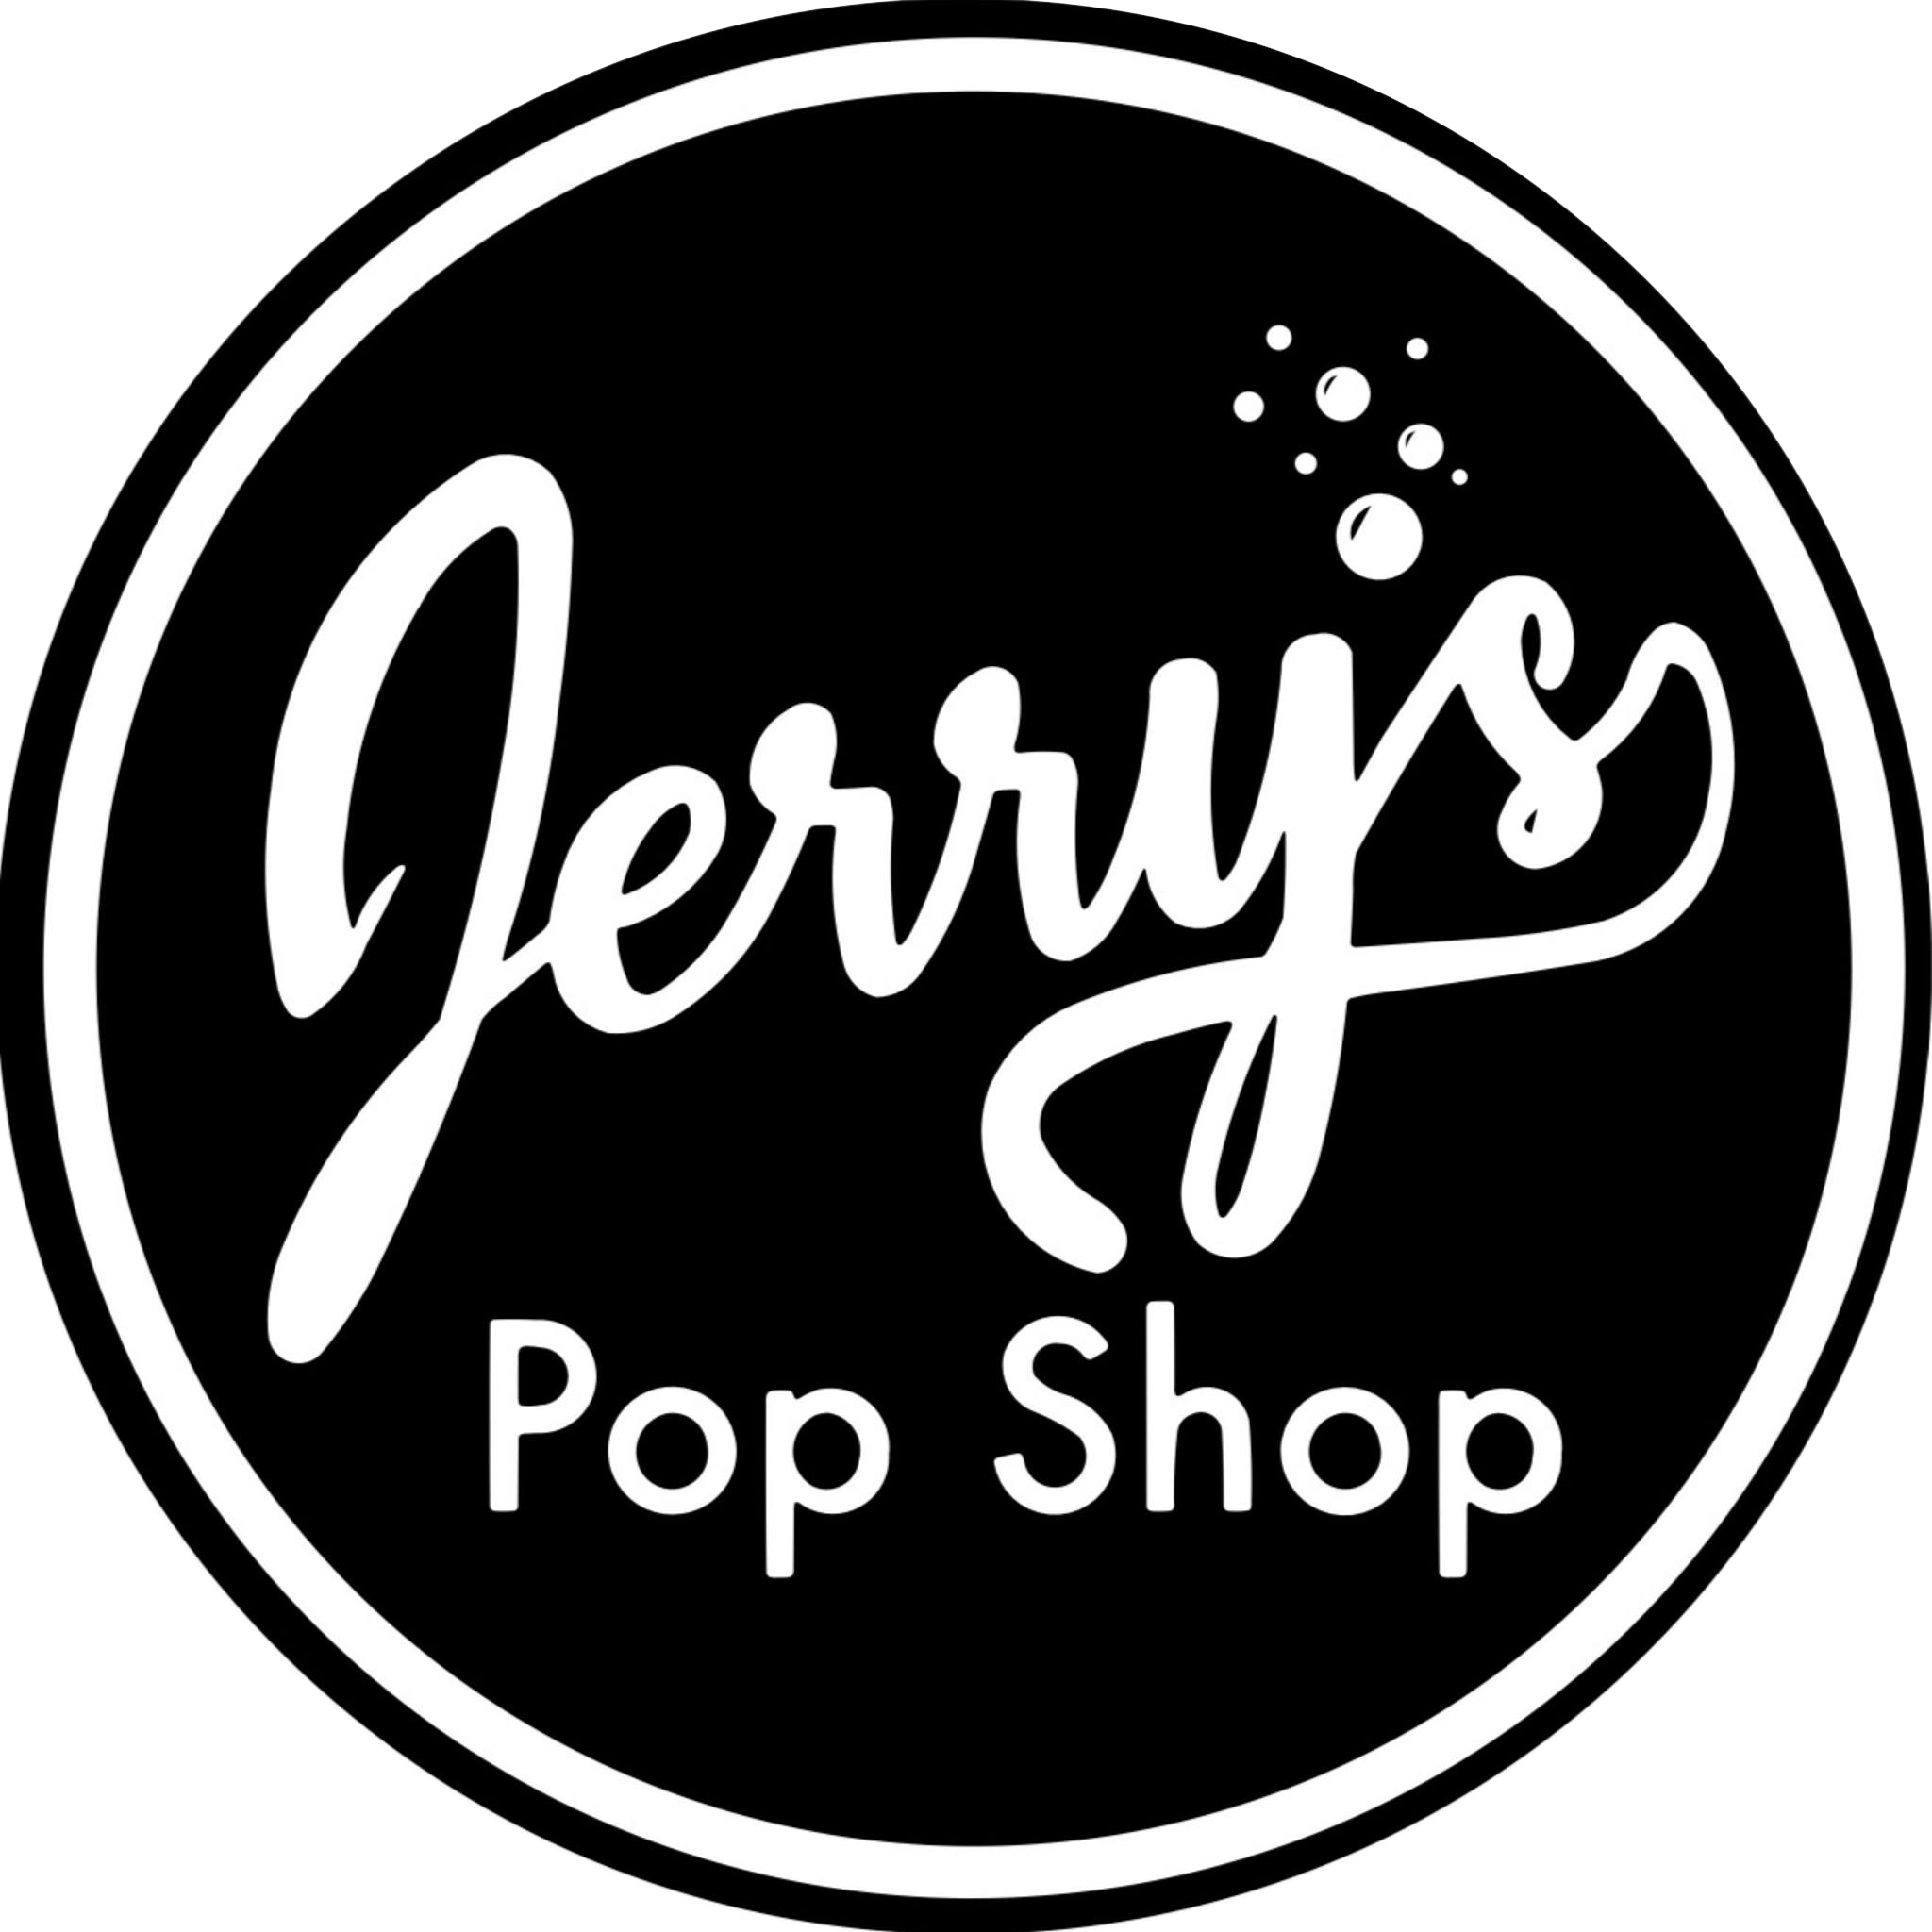 Jerrys-Pop-Shop.png